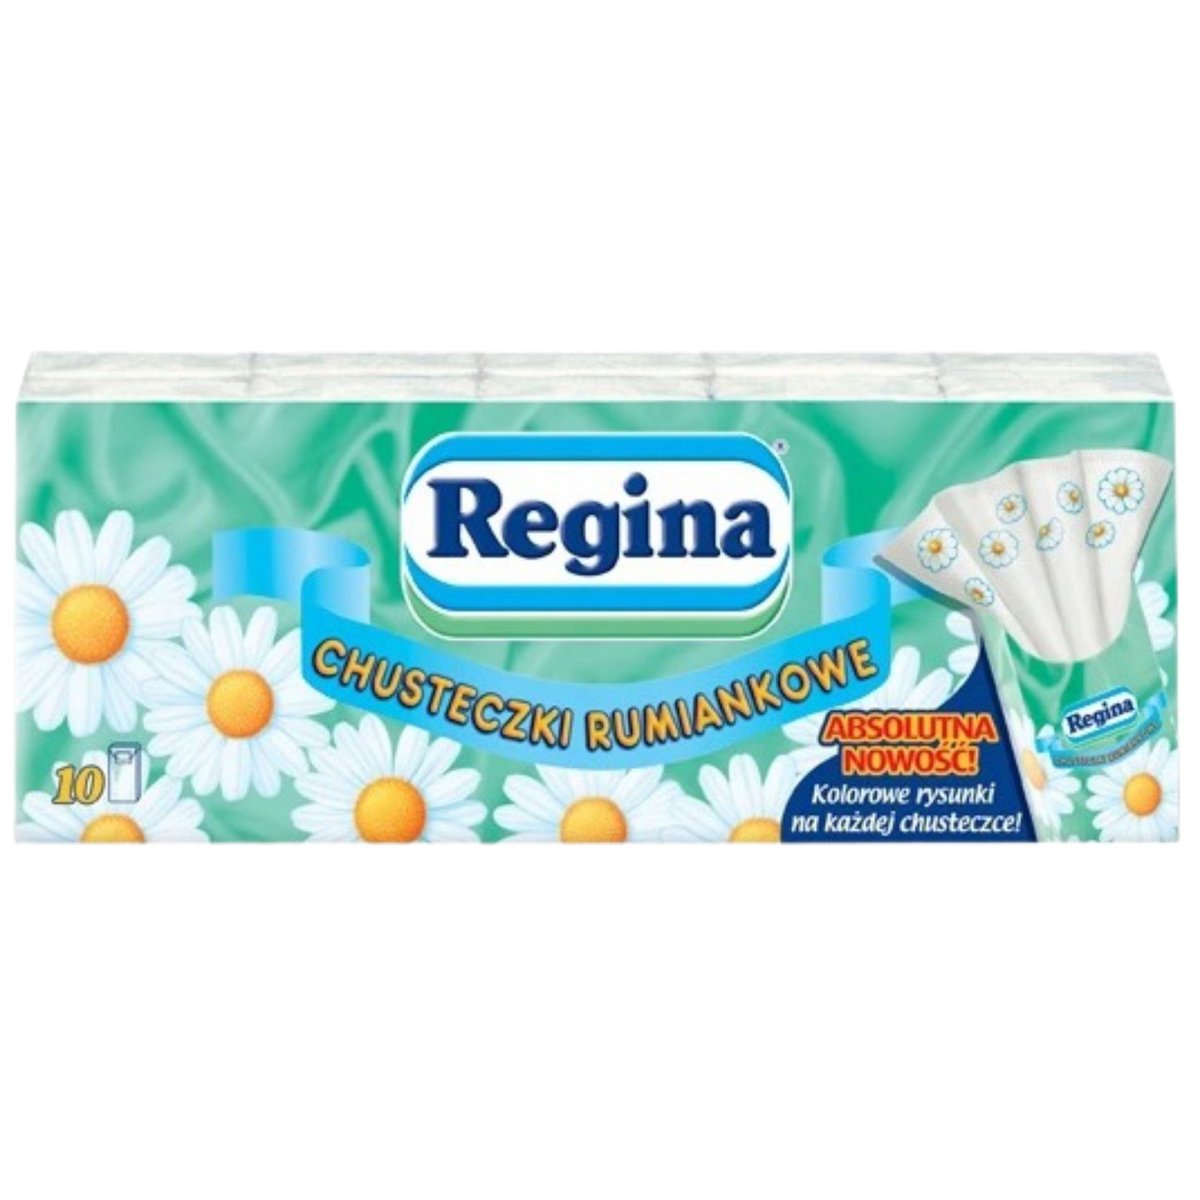 Regina chusteczki HIGIENICZNE RUMIANKOWE 10X24